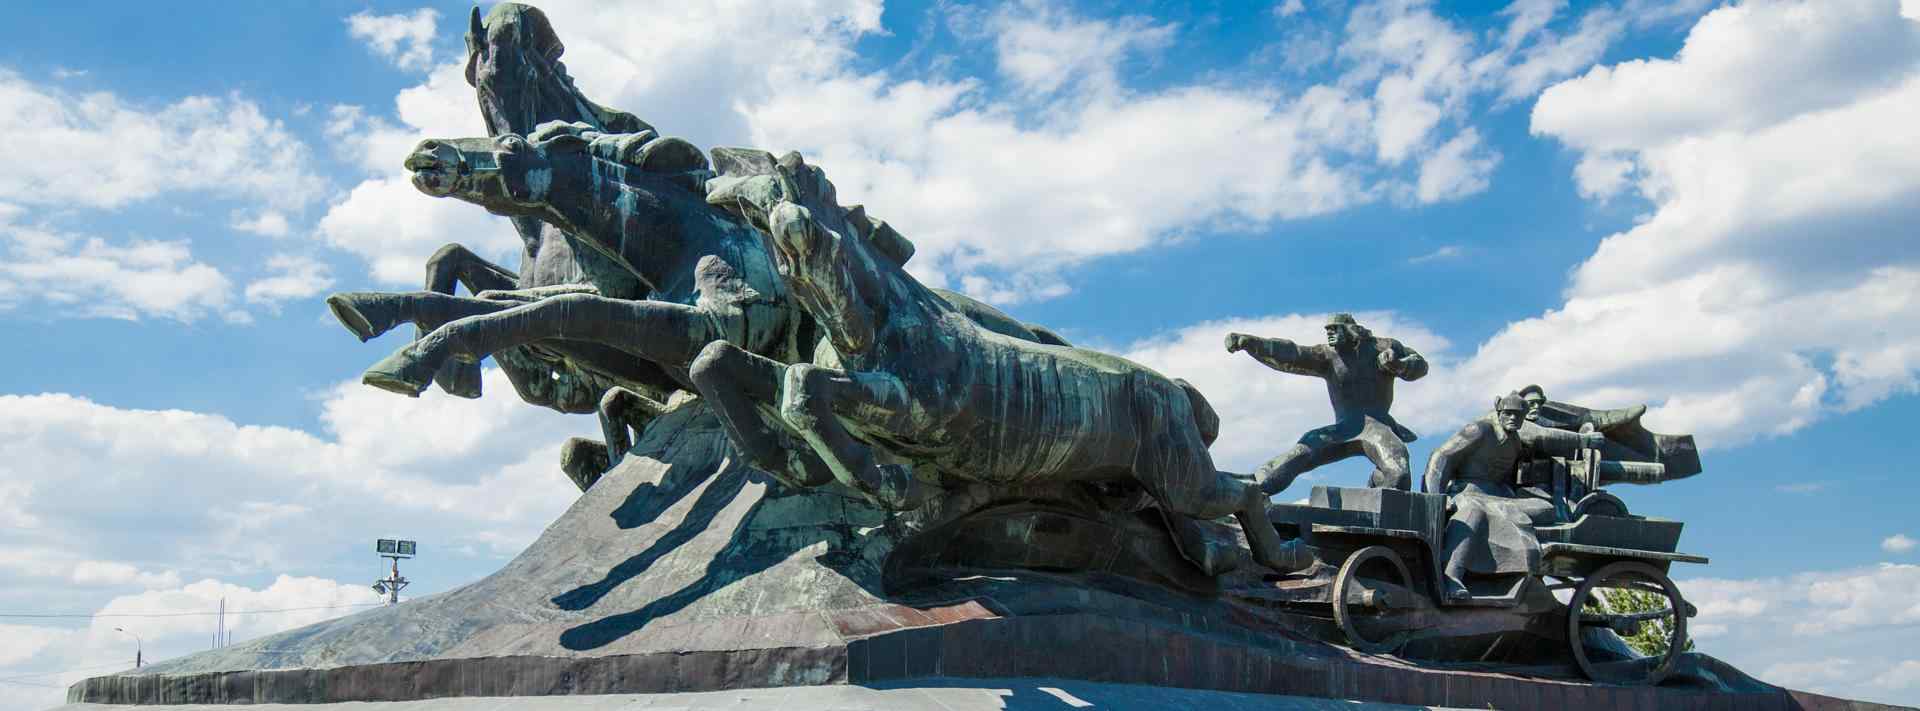 Памятник 1-ой конной армии "Тачанка"